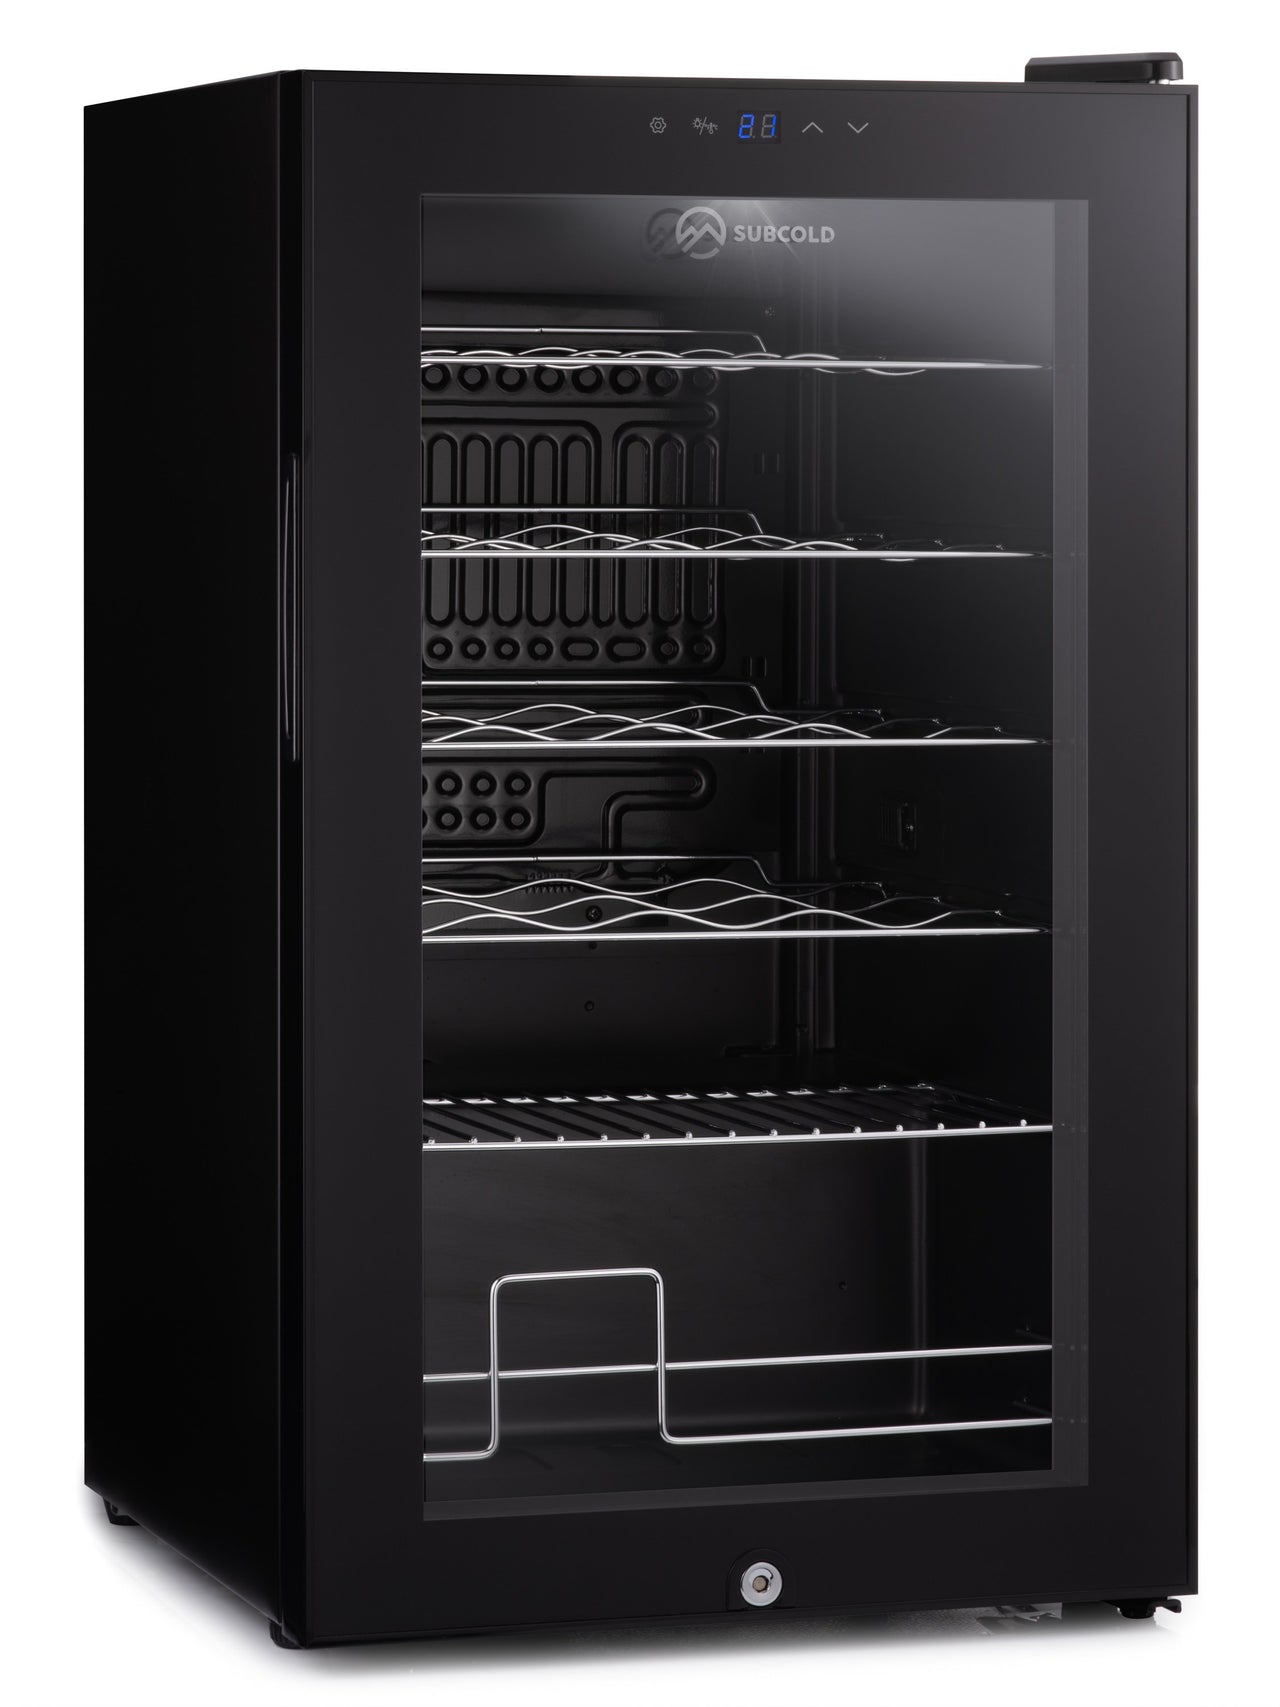 Subcold Viva 24 bottles wine cooler fridge (70 litre) interior